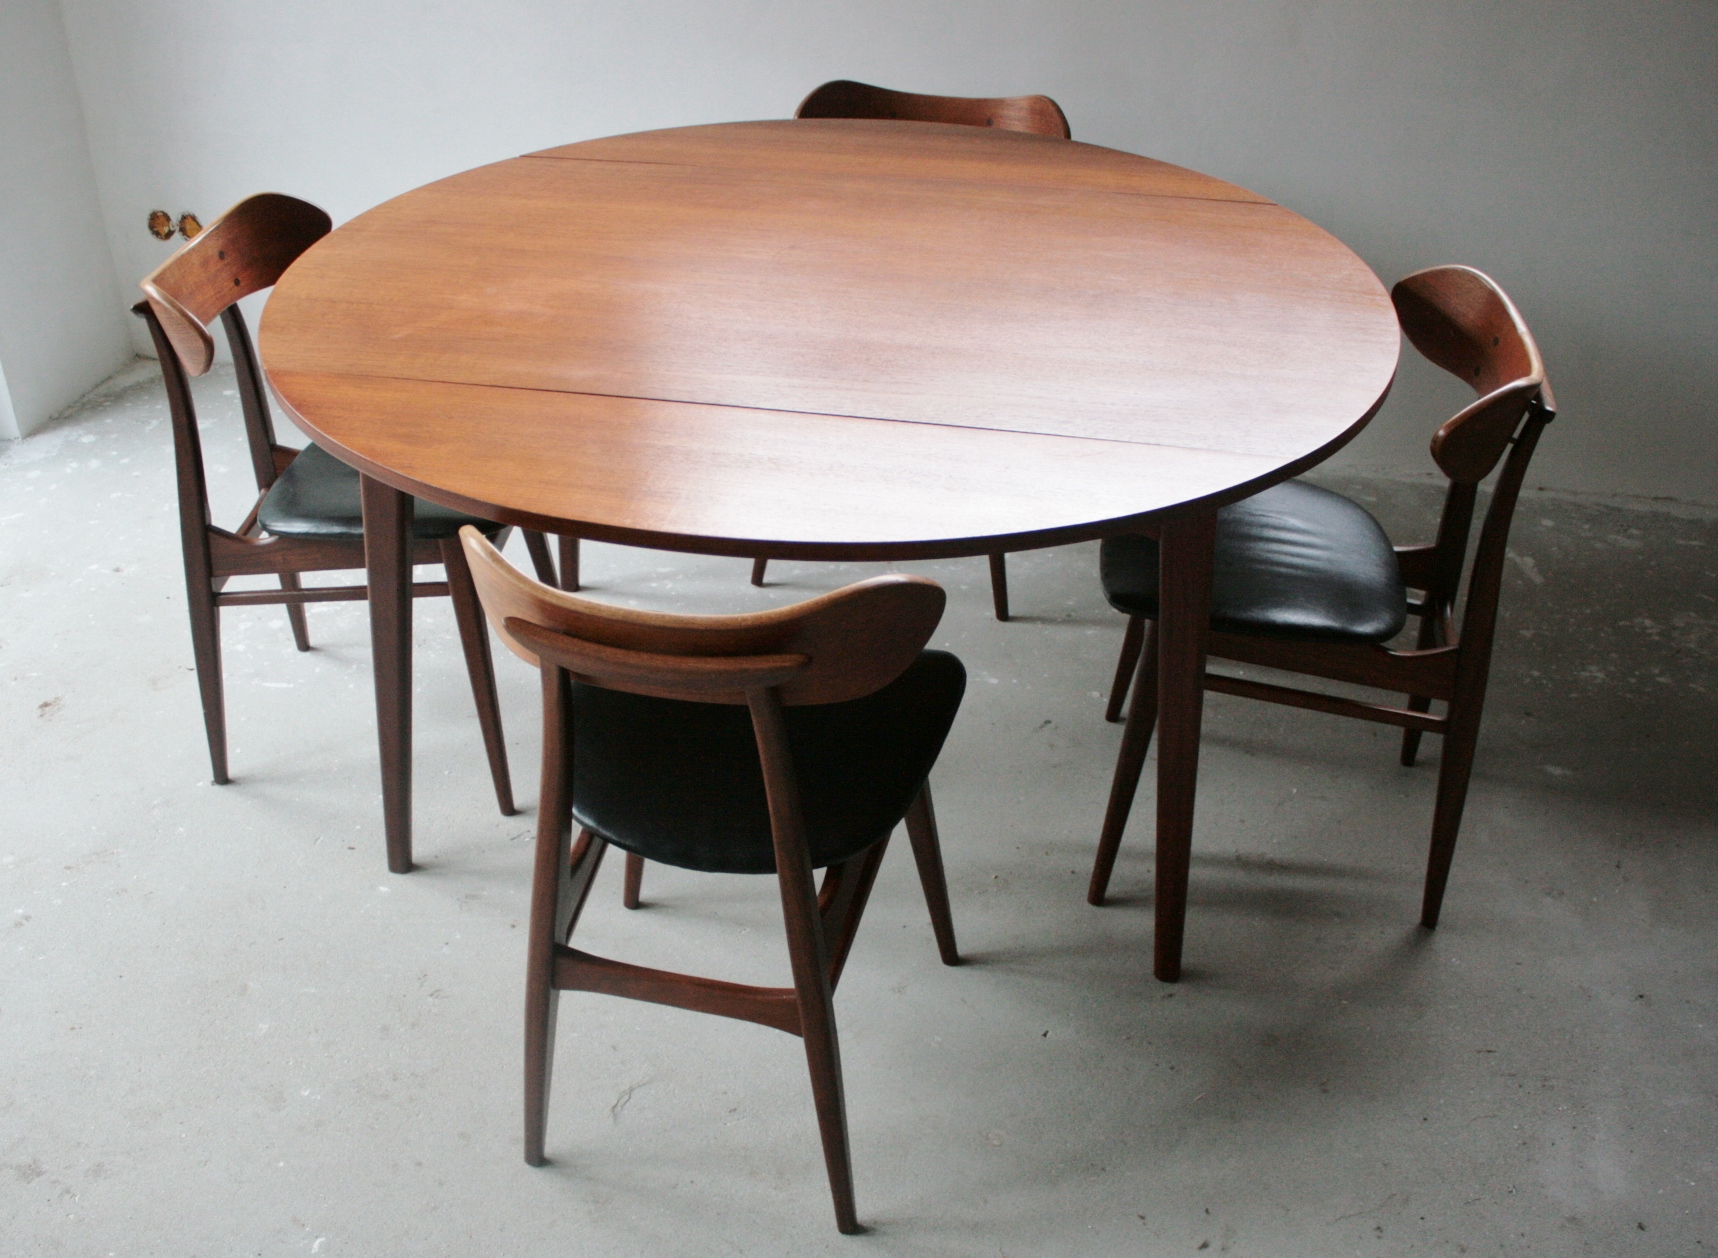 Verkocht Louis van Teeffelen ronde tafel met 4 stoelen, mid century: Verkocht : Curiosa de Vlinder, webshop curiosa, emaille, Keukengerei, vintage en vrijdags is onze winkel geopend, koffie